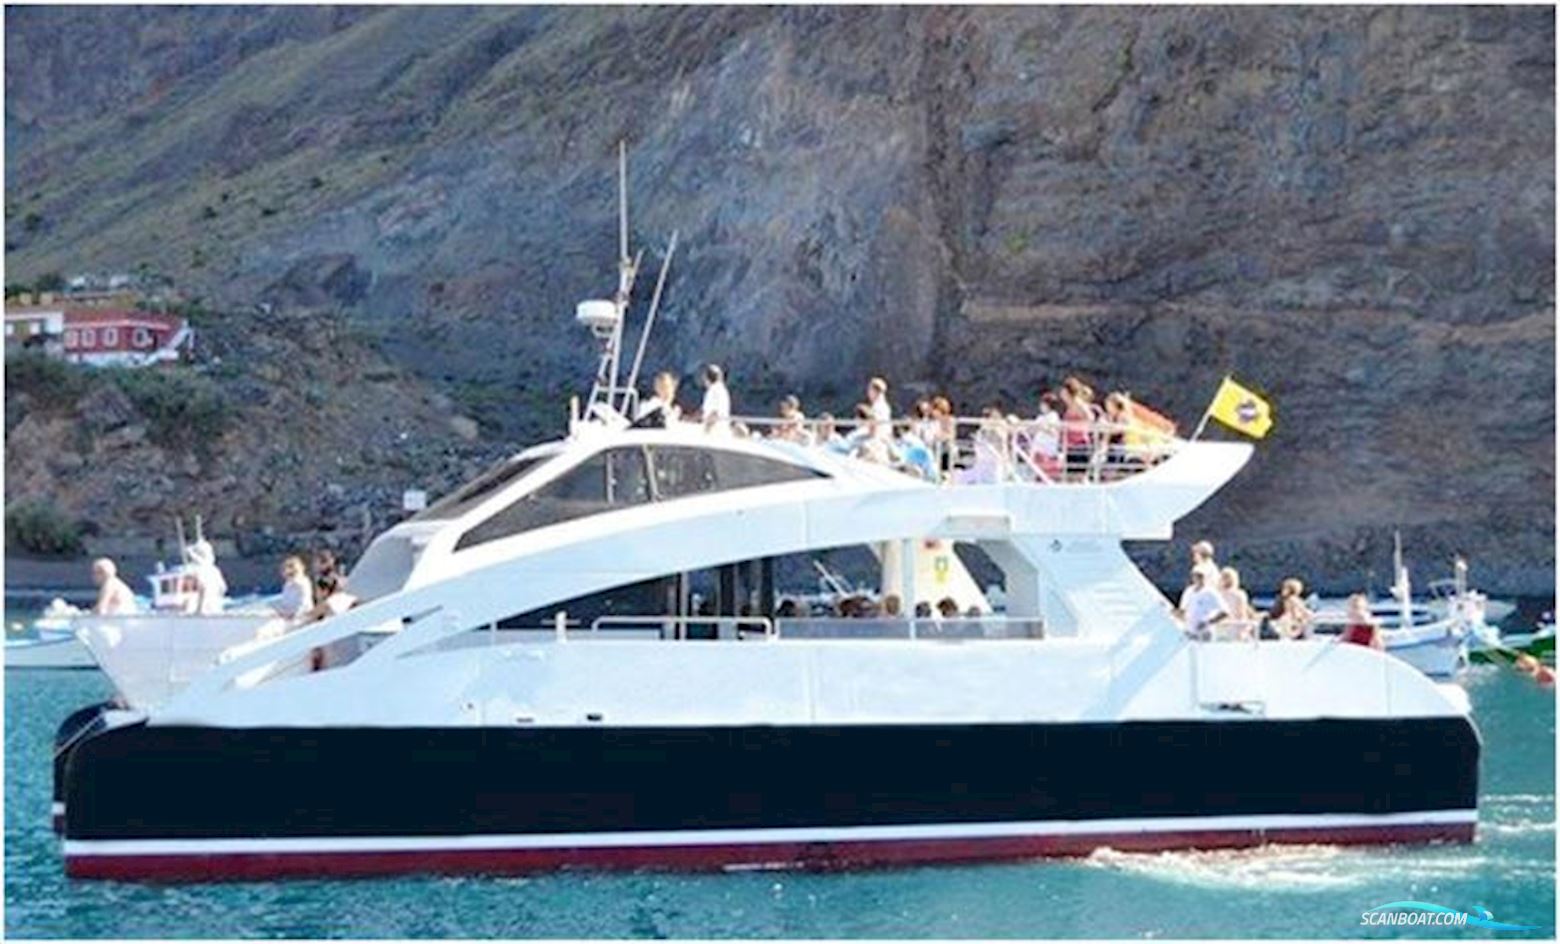 Custom Built Catamaran Motor boat 2013, with Yanmar engine, Spain